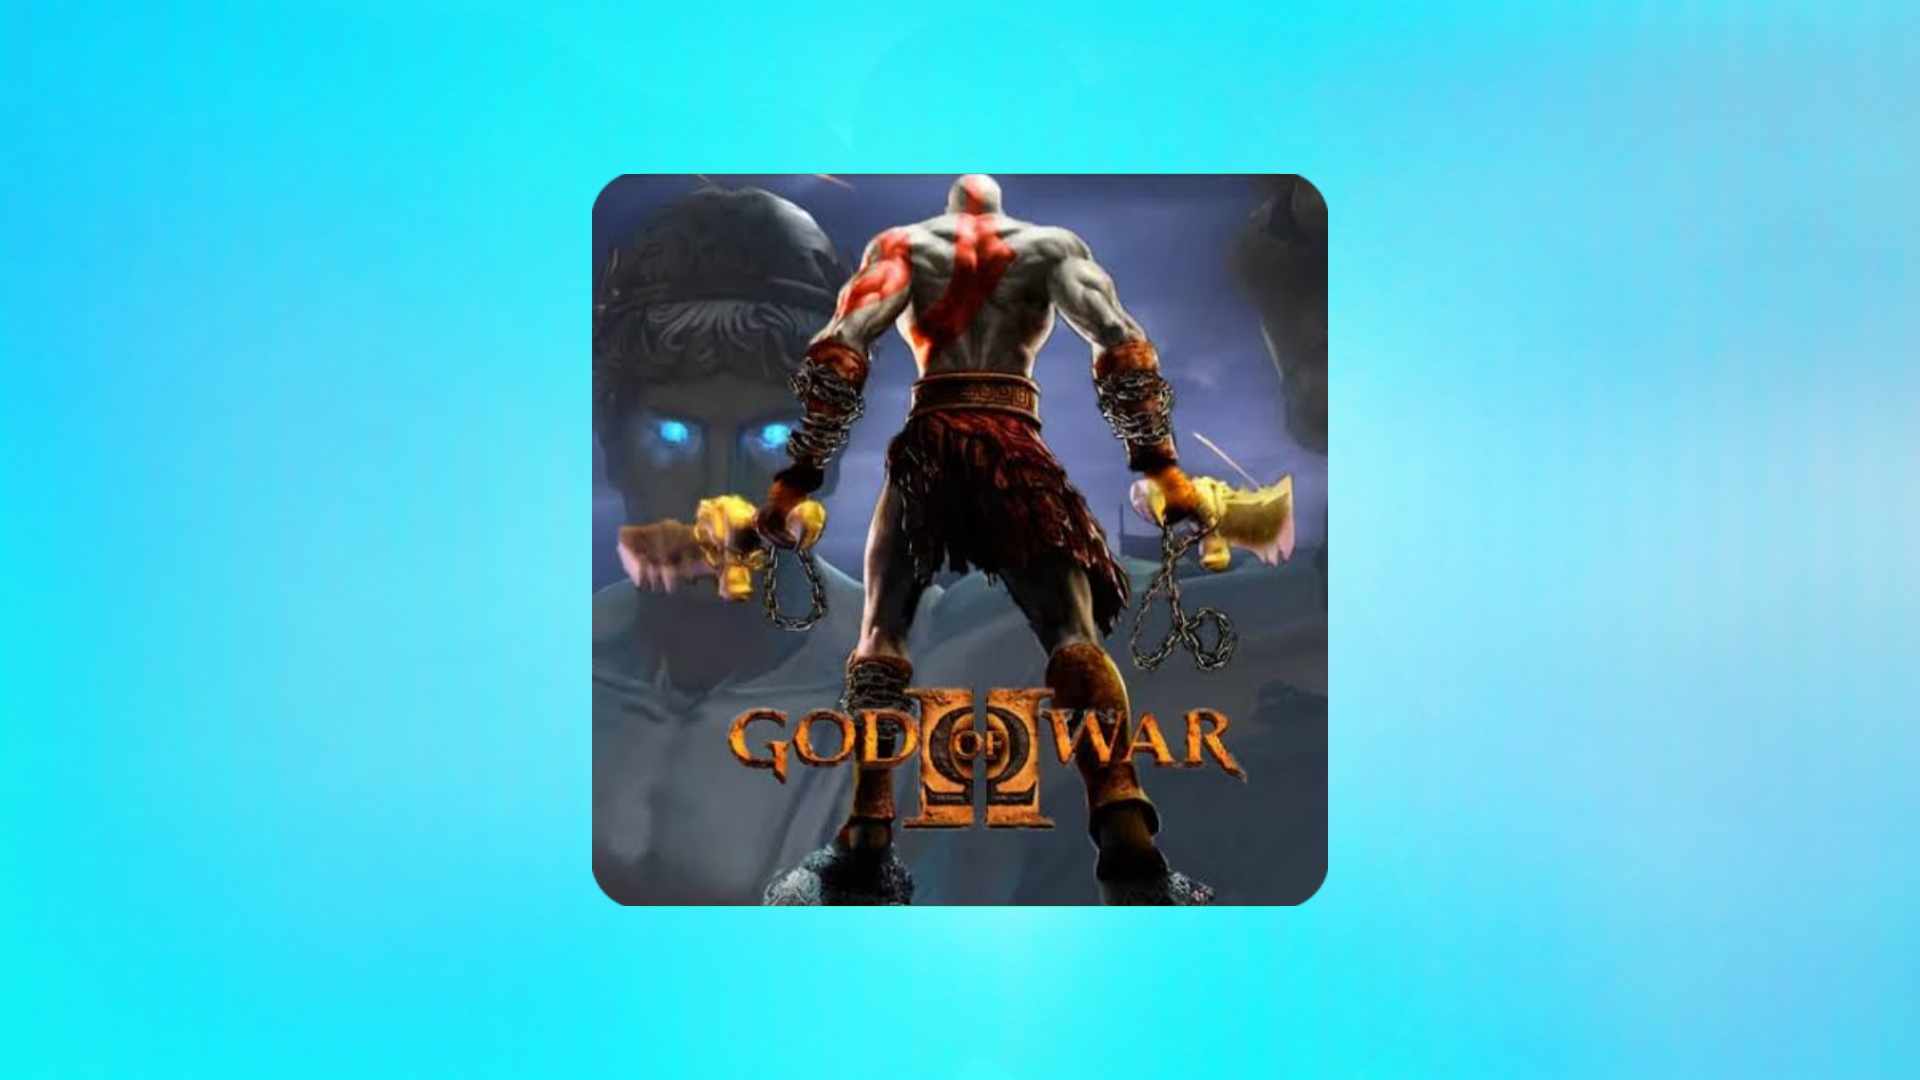 הורד את God of War 2 למחשב בעברית בחינם